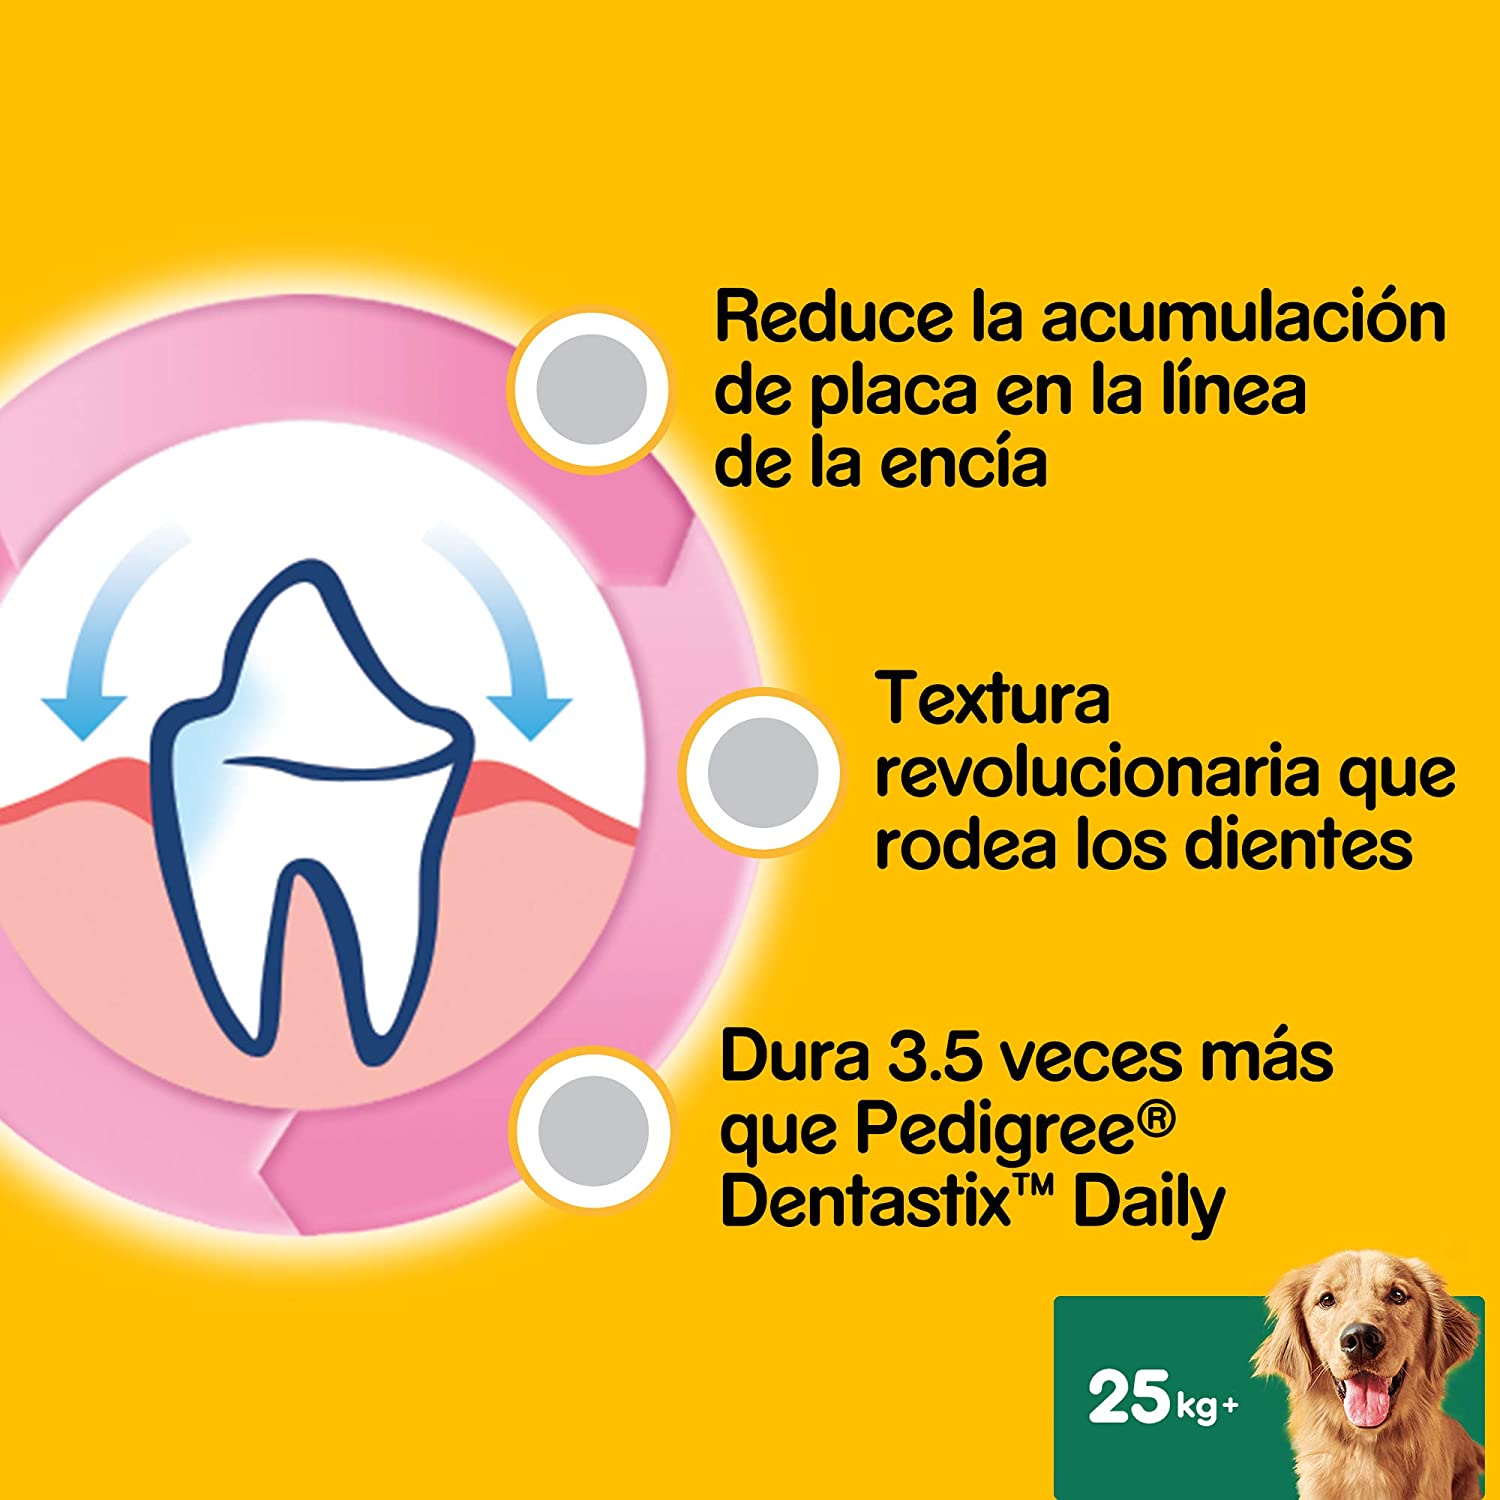  Pedigree Pack de 28 Dentastix de uso diario para la limpieza dental de perros grandes (Pack de 4) 